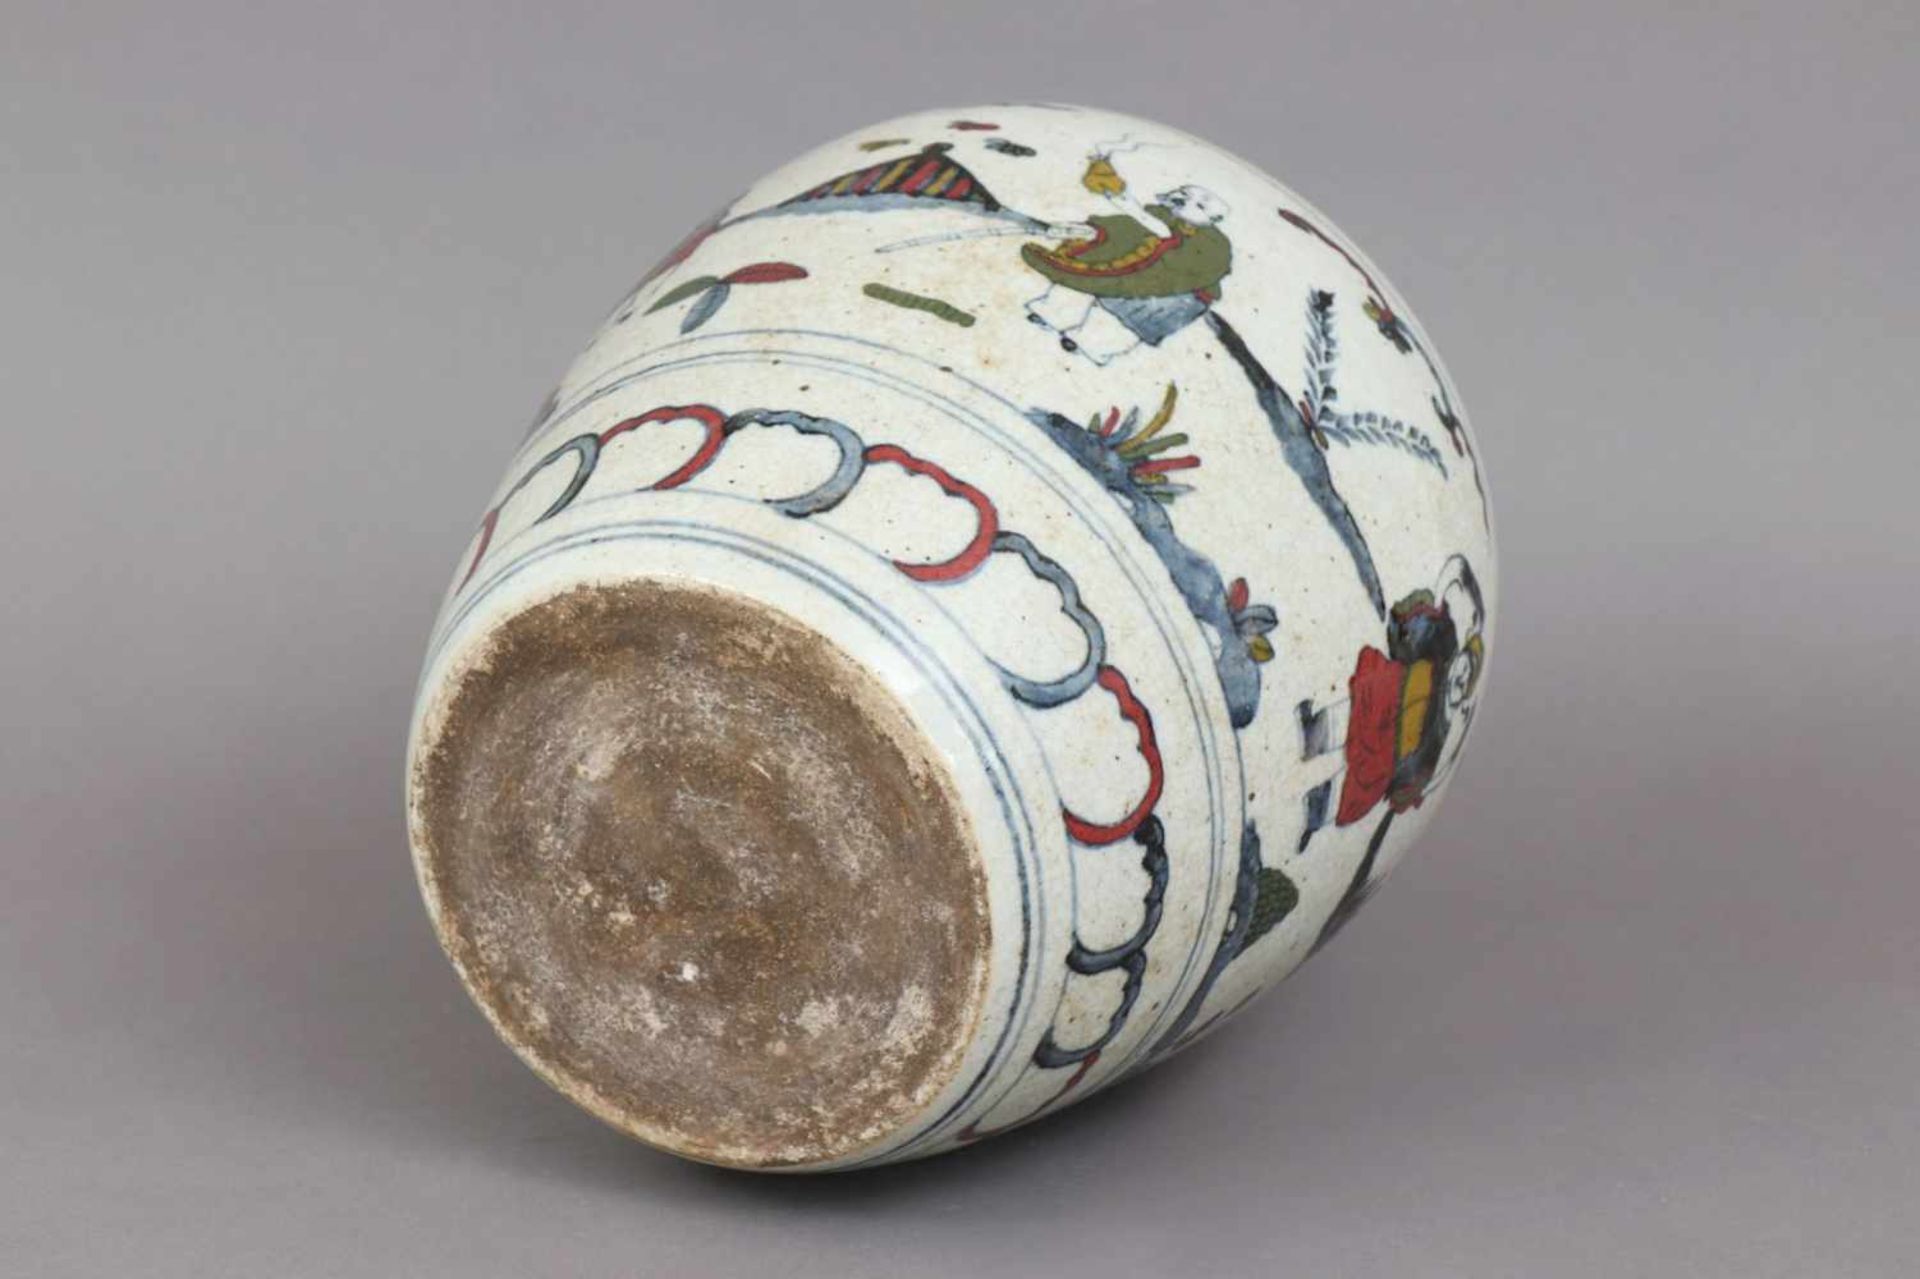 Chinesisches Porzellan-Vasengefäßhell glasiert und craqueliert, Alter unbestimmt, hochbauchiger - Bild 3 aus 3